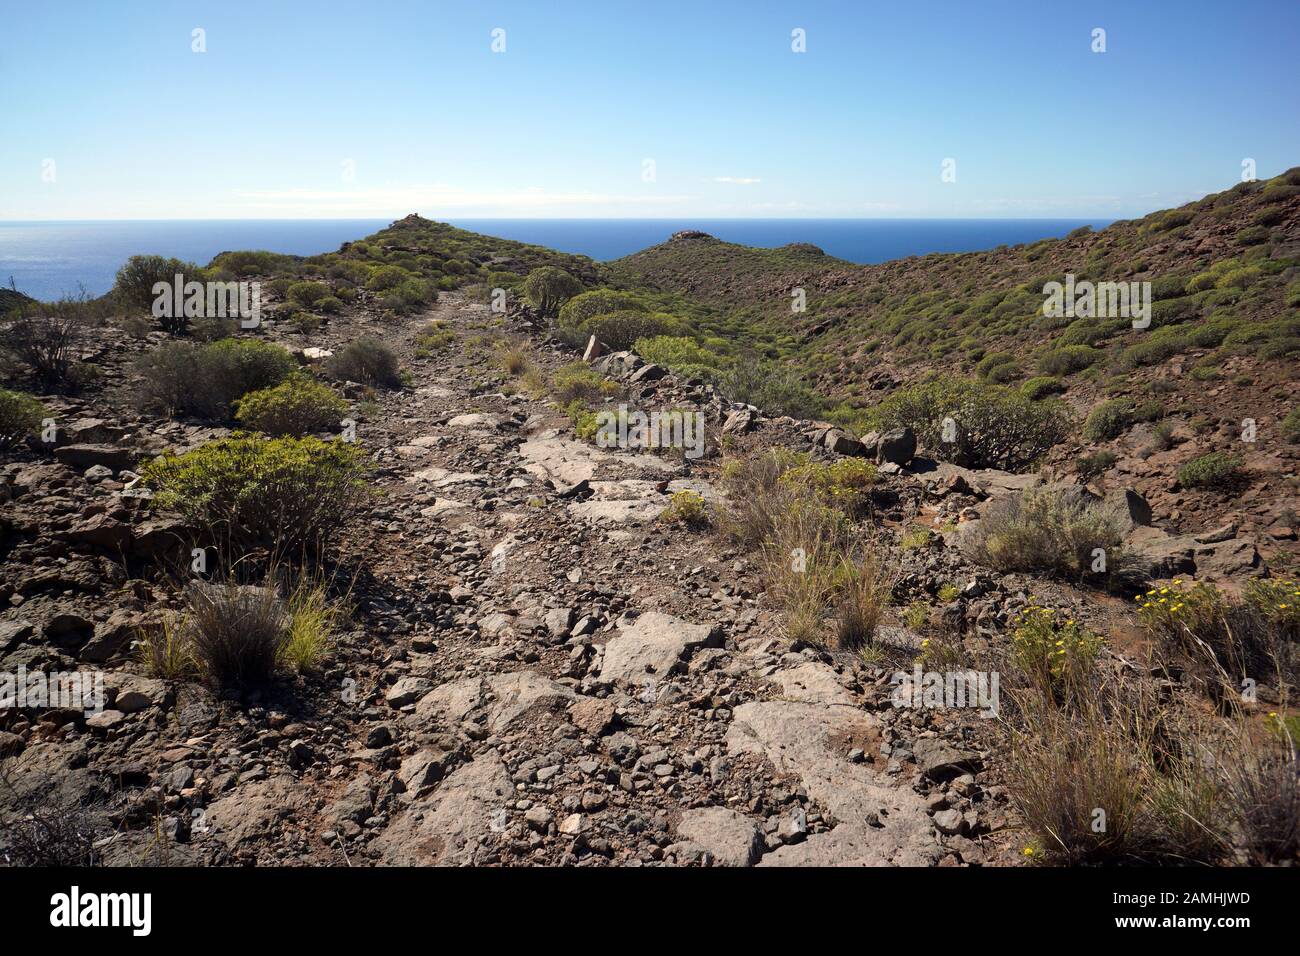 Wanderung über die Lomo de Tabaibales mit typischer Wolfsmisch-Vegetation,  Puerto de Mogan, Gran Canaria, Spanien Fotografía de stock - Alamy